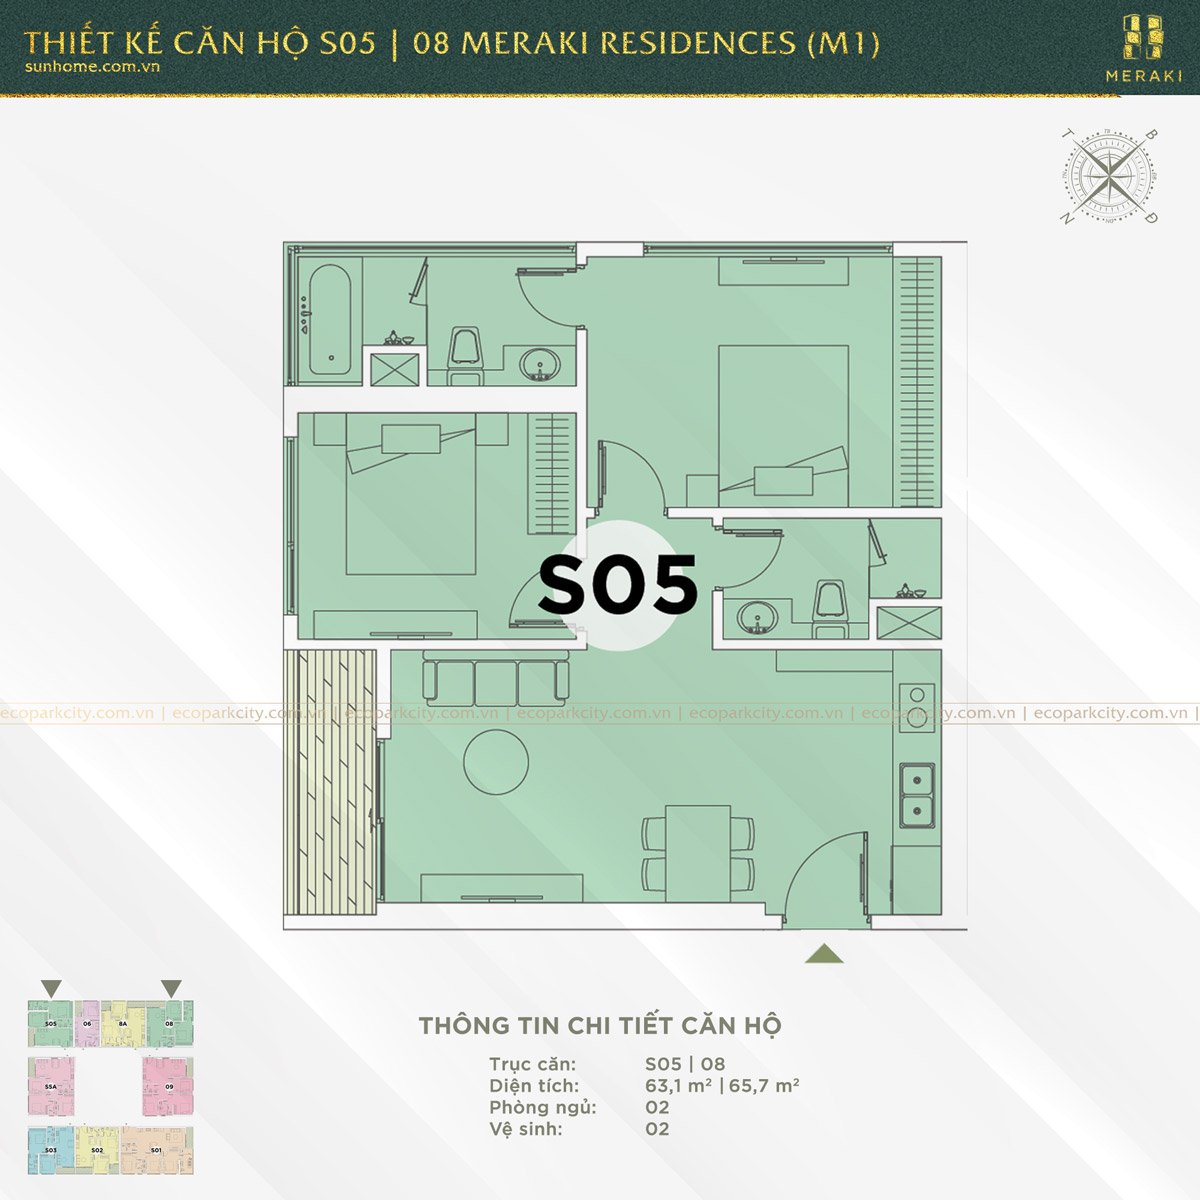 Thiết kế căn hộ S05 và 08 Meraki Residences (M1)